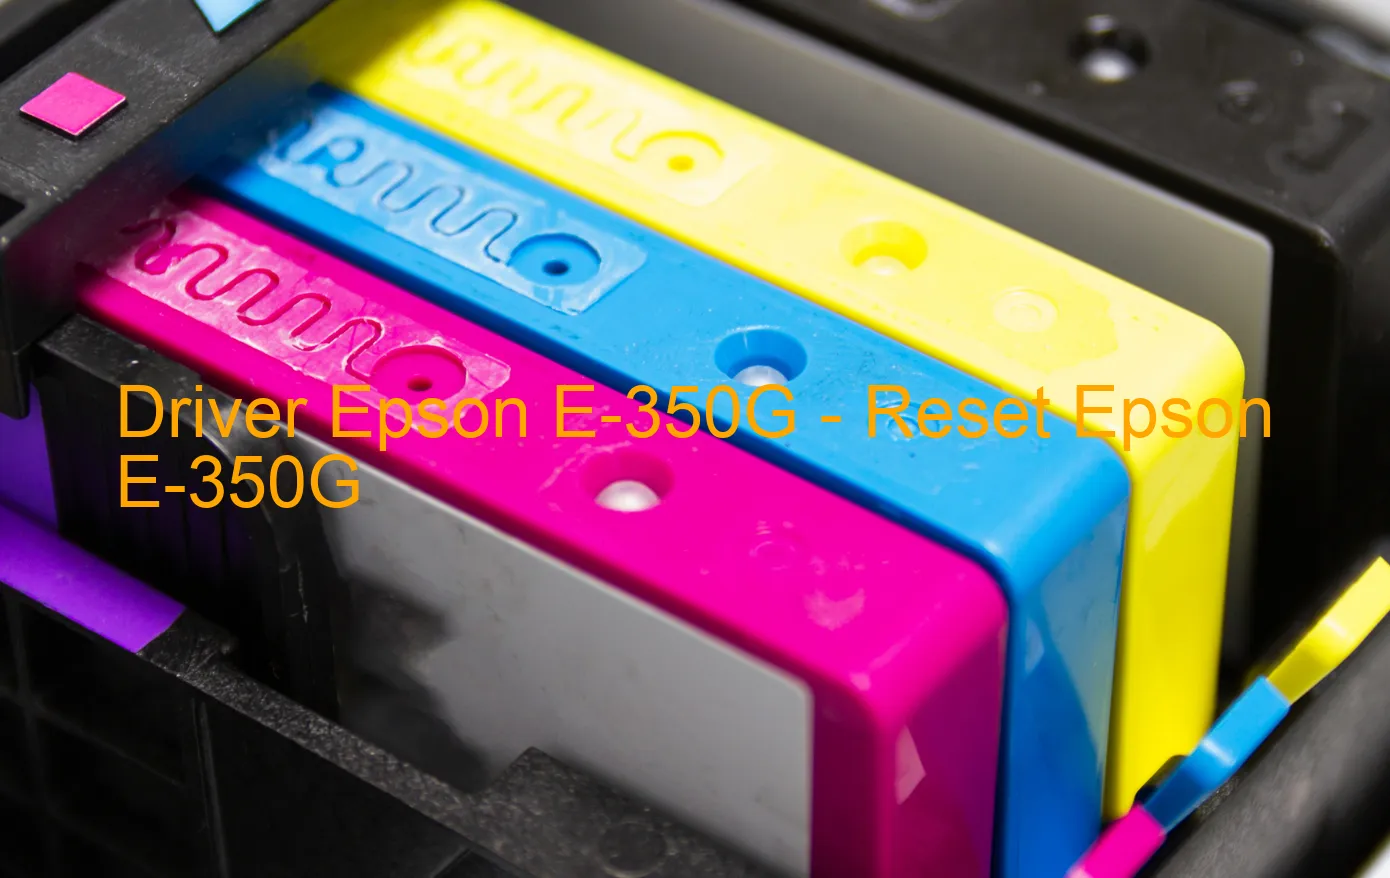 Epson E-350Gのドライバー、Epson E-350Gのリセットソフトウェア